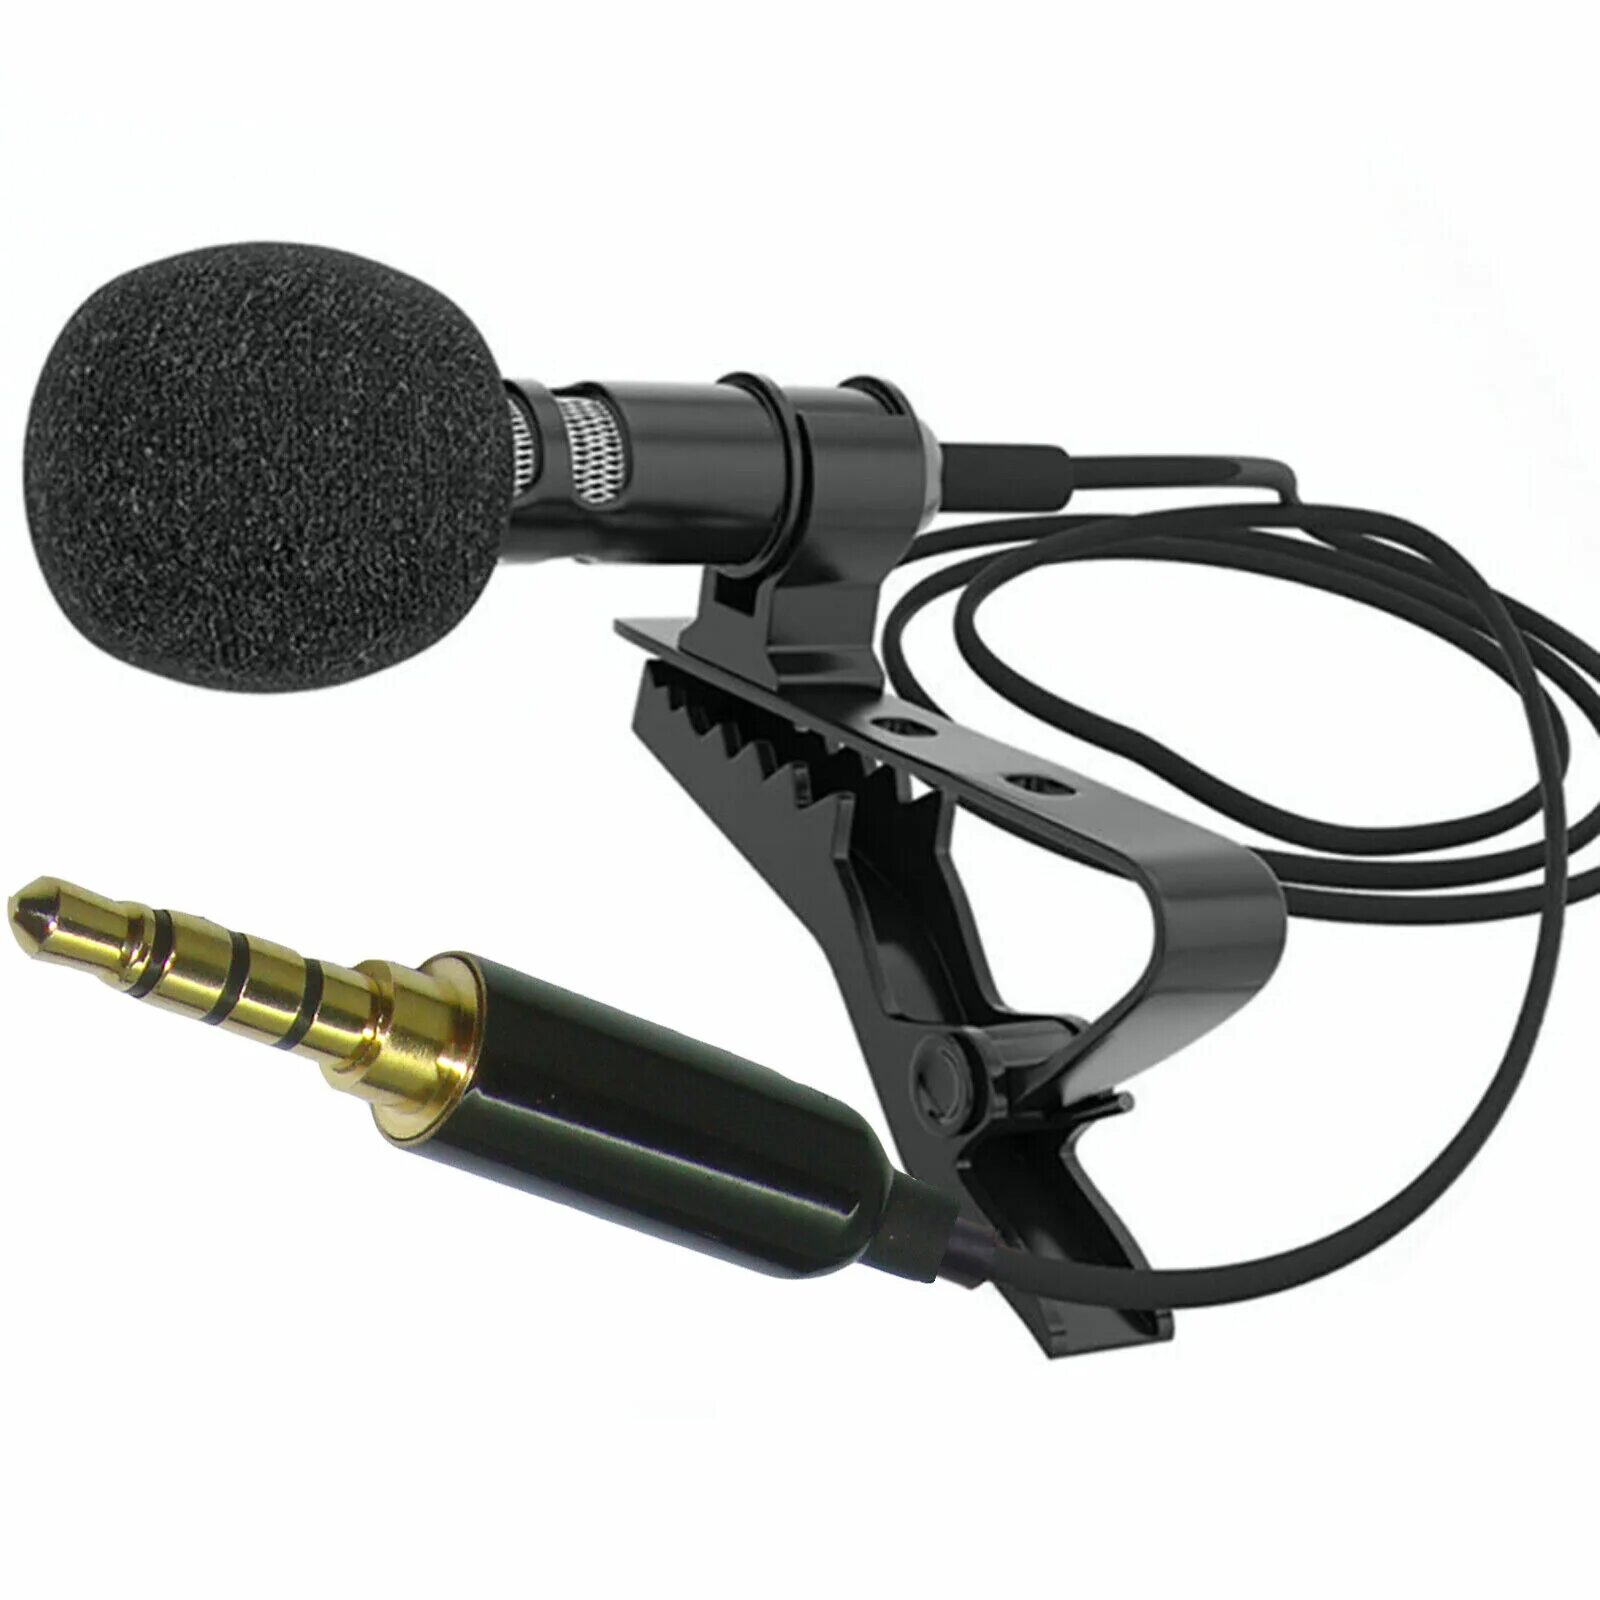 Микрофон мм 5. Петличный микрофон gl119. Микрофон gl-119. Lavalier Microphone gl-119 3.5 mm. Микрофон петличный Lavalier.